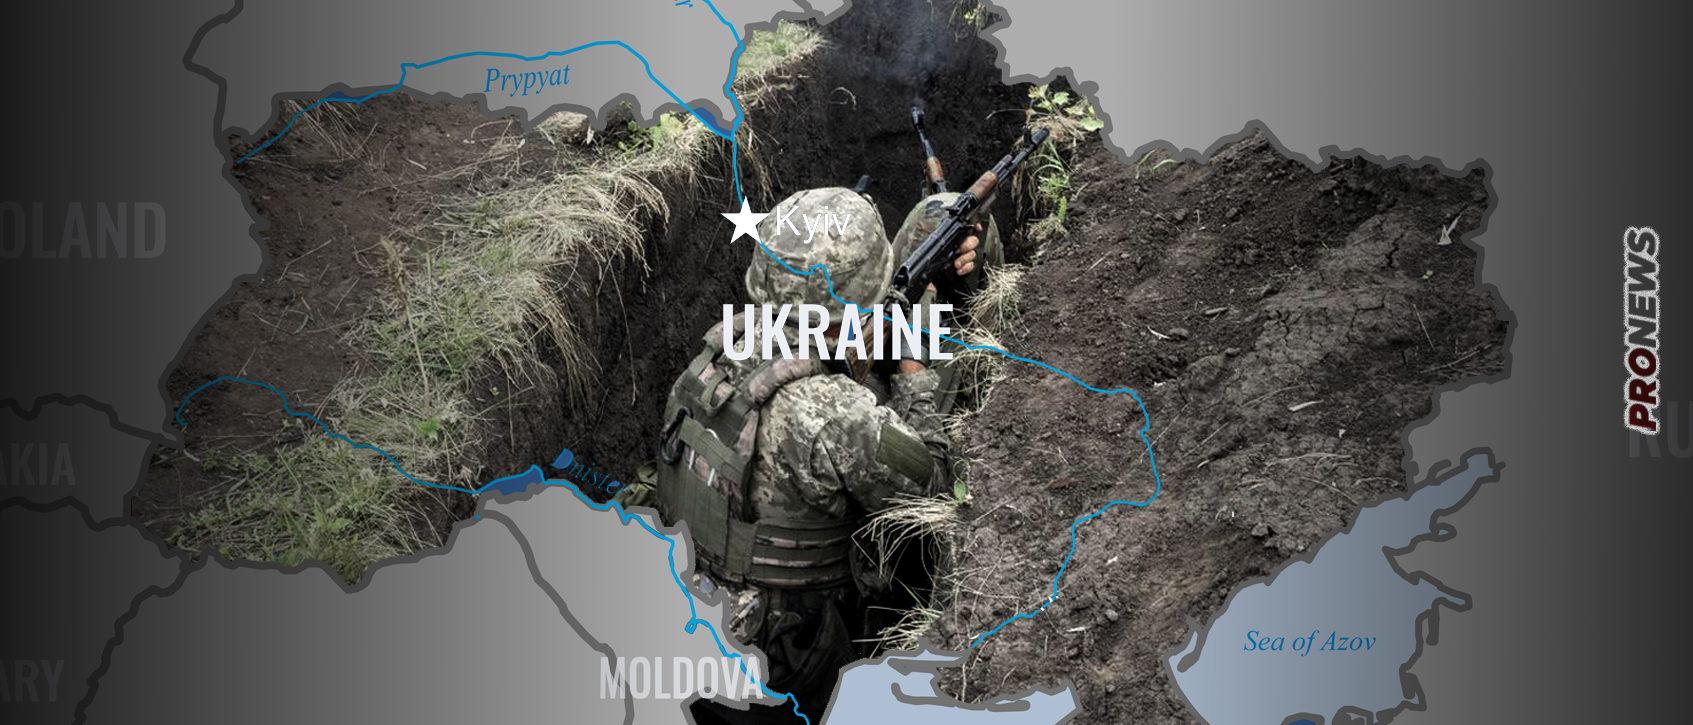 Βίντεο: Ουκρανός διοικητής πήγε να επιθεωρήσει χαράκωμα στο μέτωπο αλλά το είχαν καταλάβει οι… Ρώσοι και τον αιχμαλώτισαν!